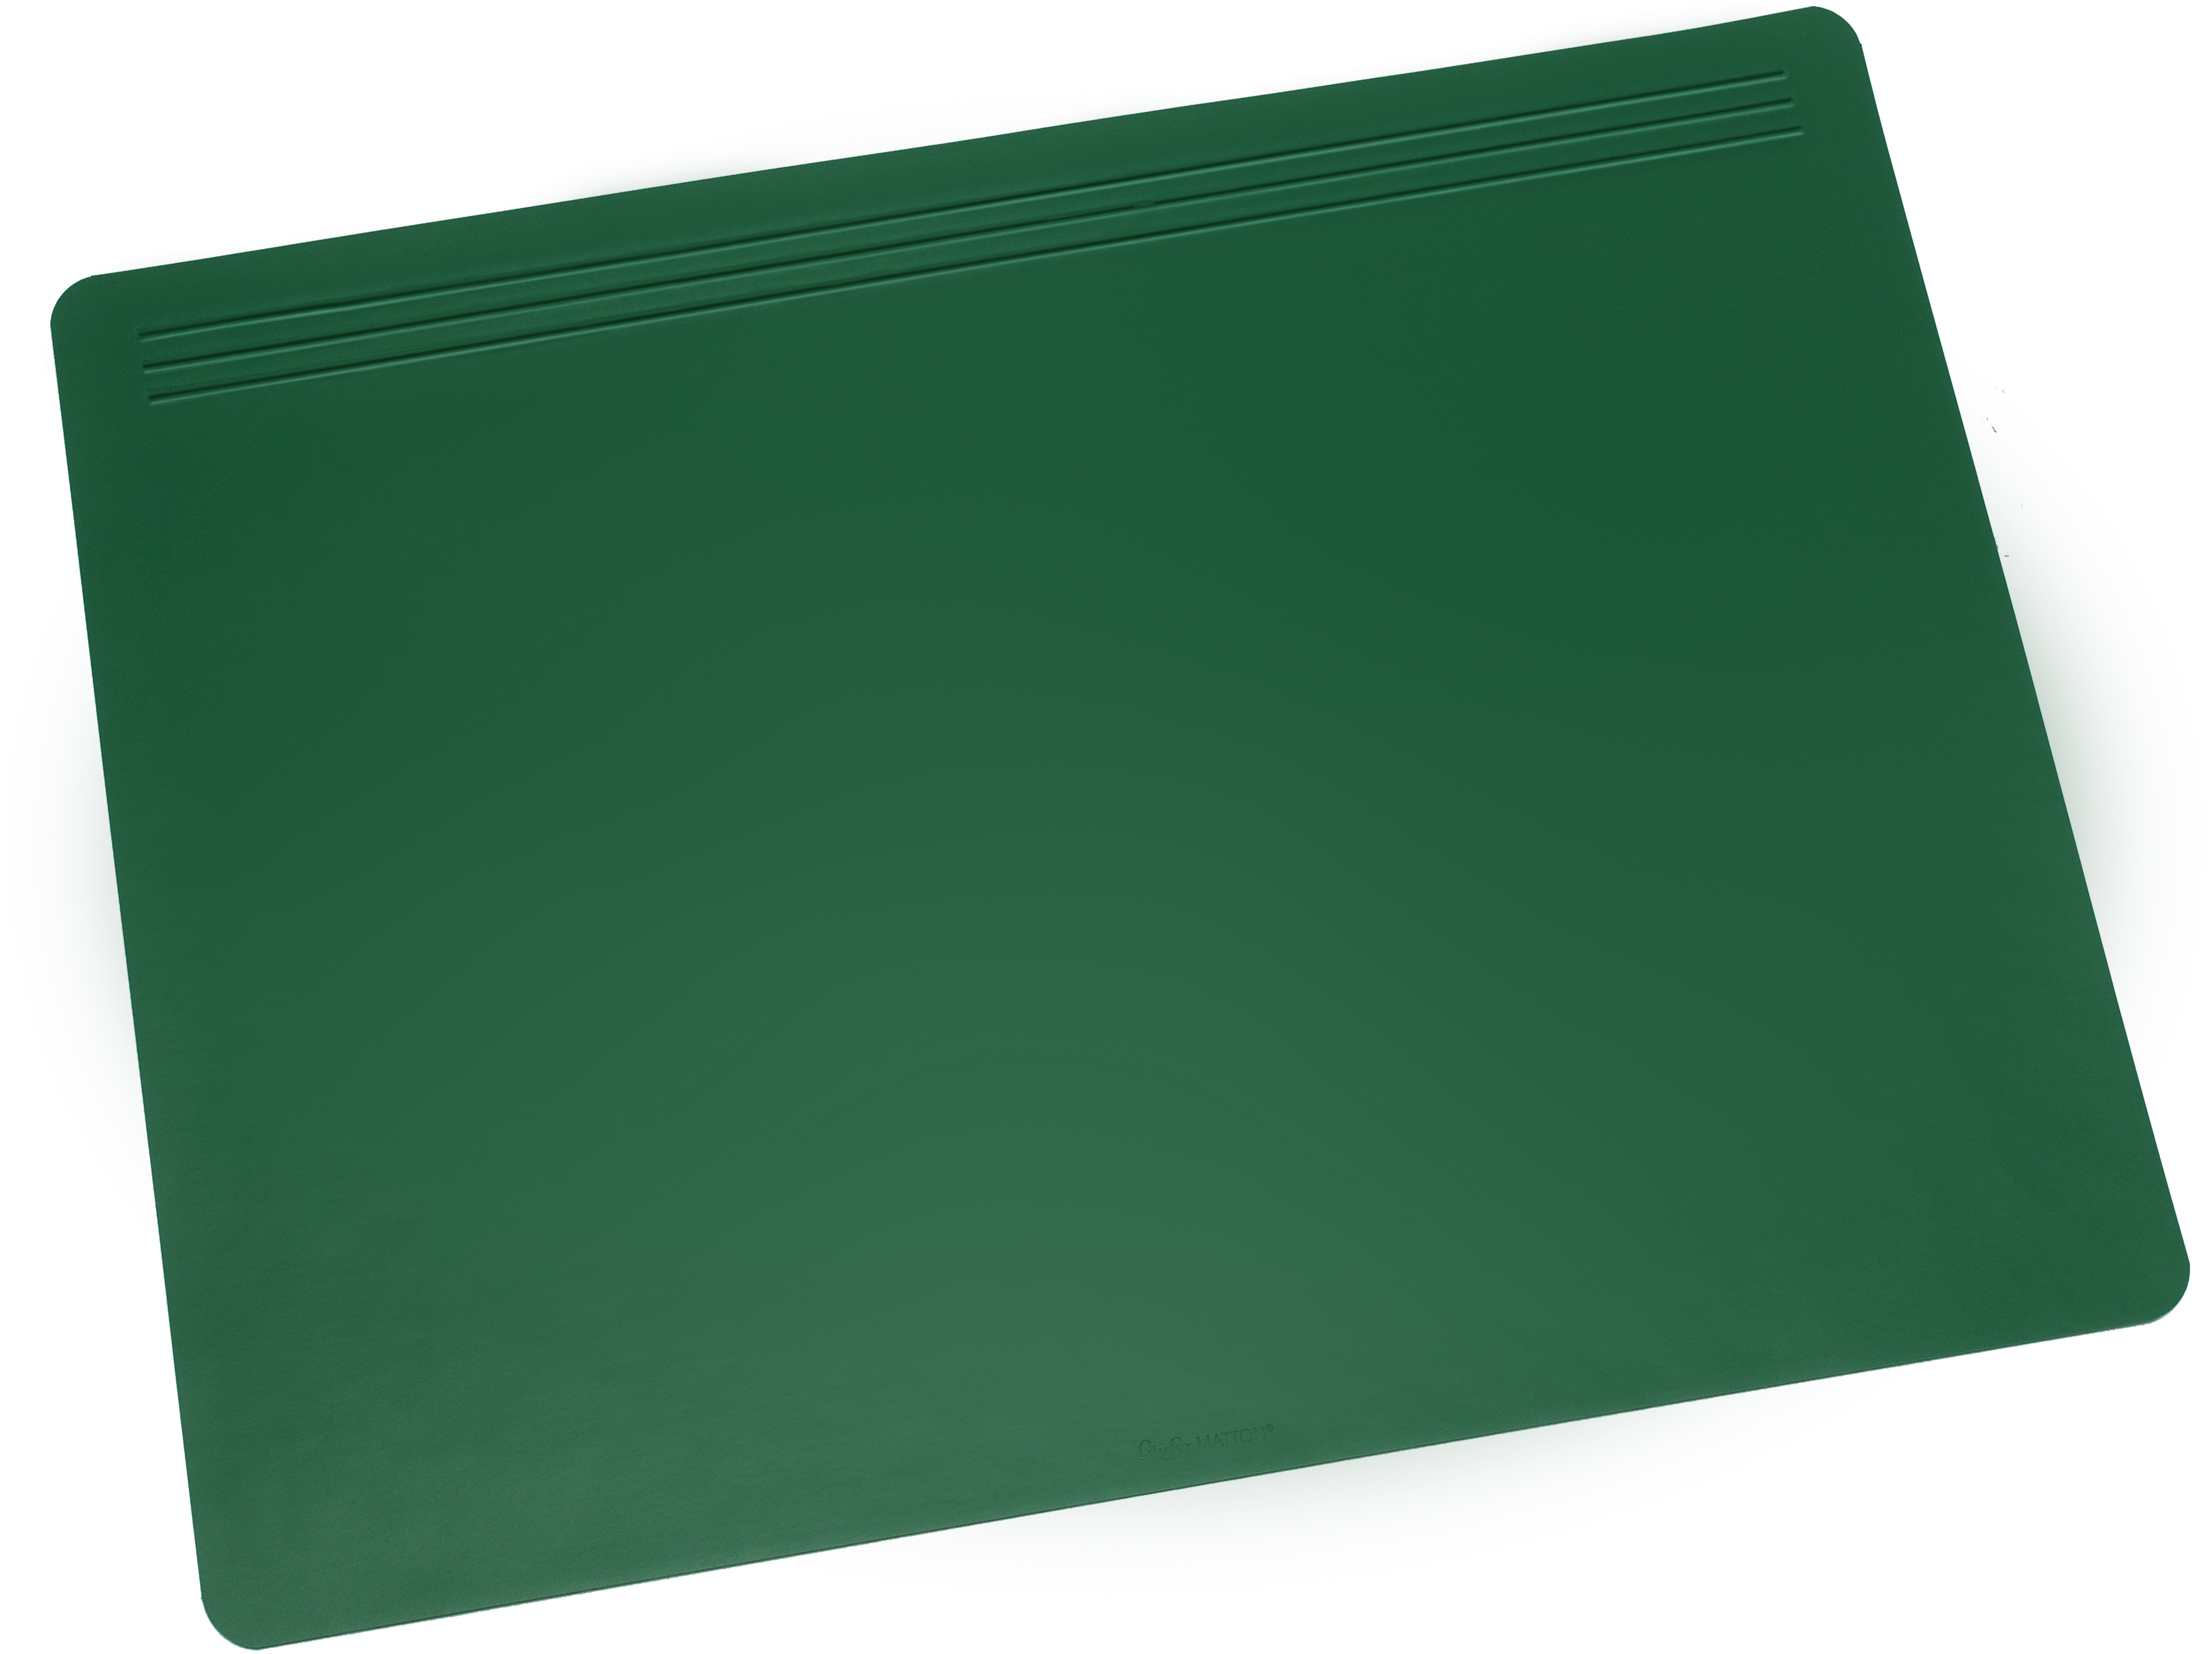 LÄUFER Schreibunterlage Matton 32701 grün 70x50cm